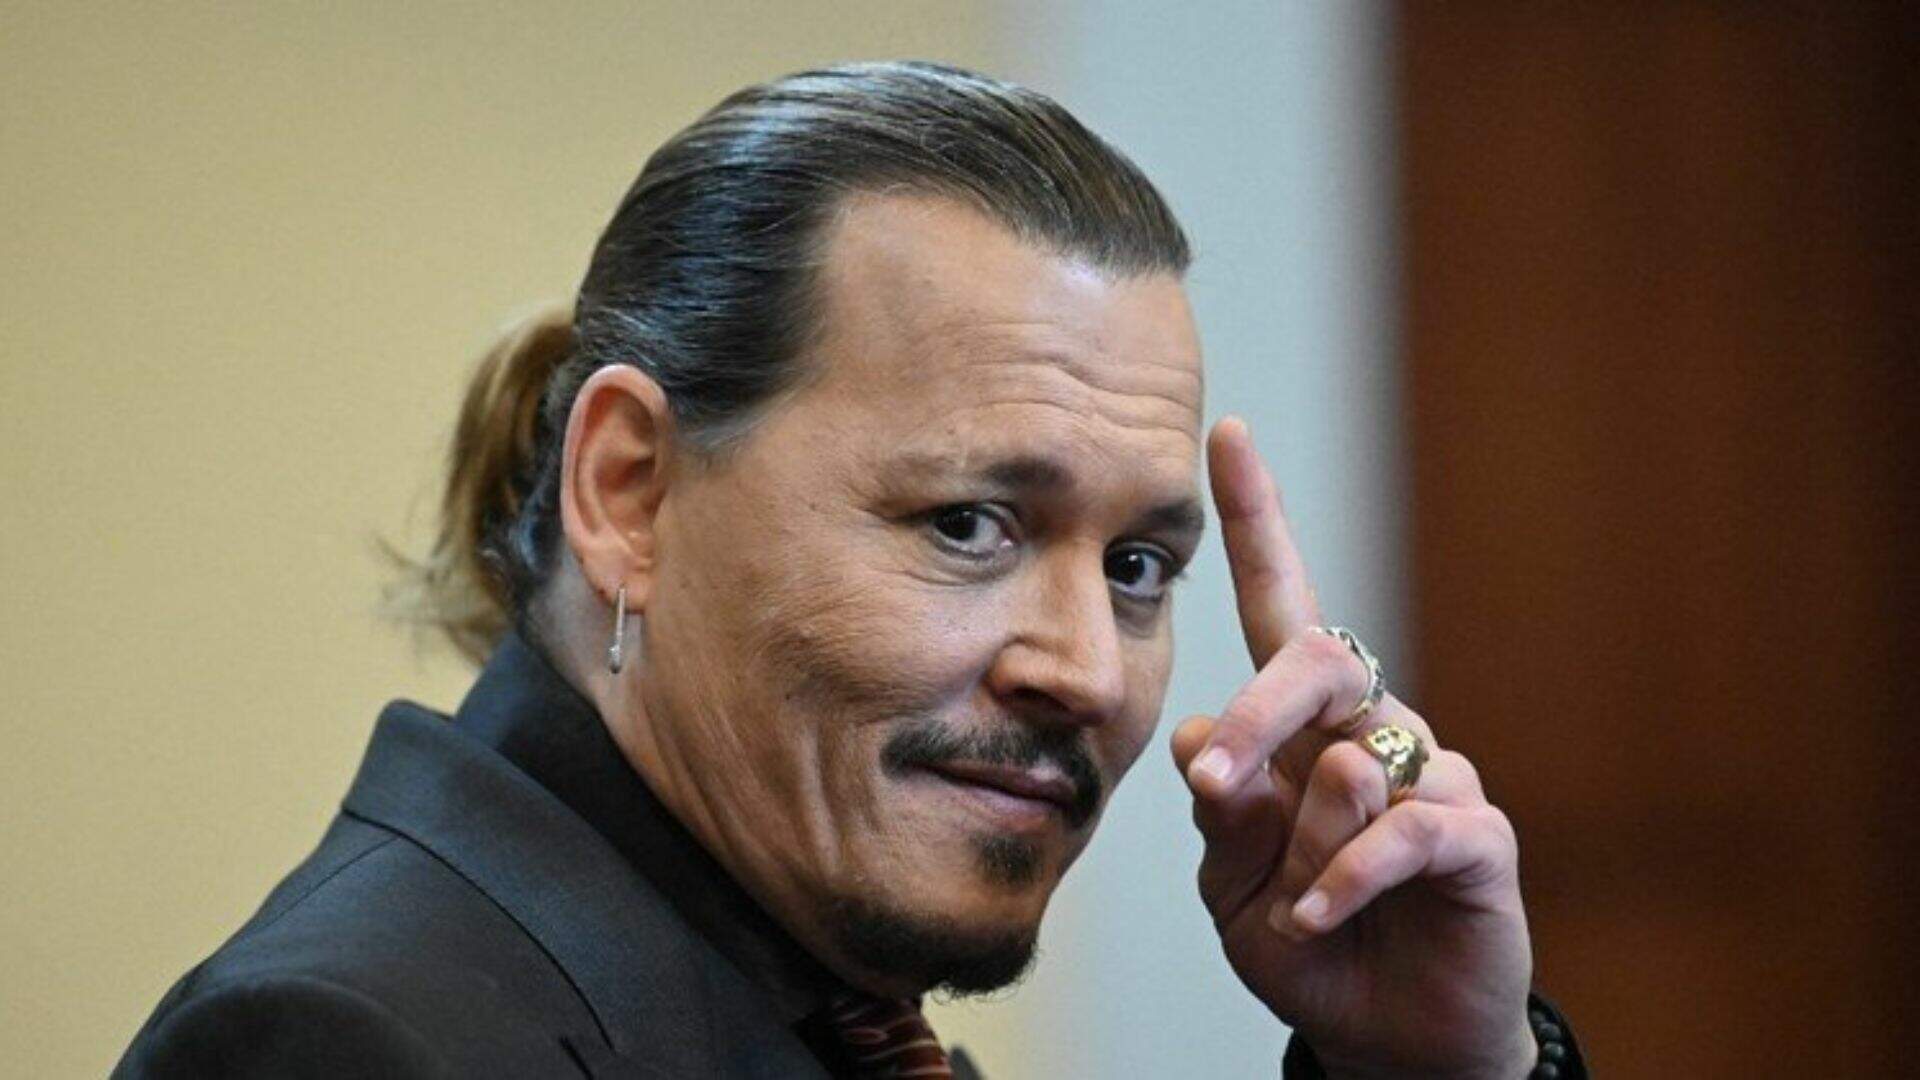 Johnny Depp será diretor de novo filme depois de polêmicas com Amber Heard - Metropolitana FM